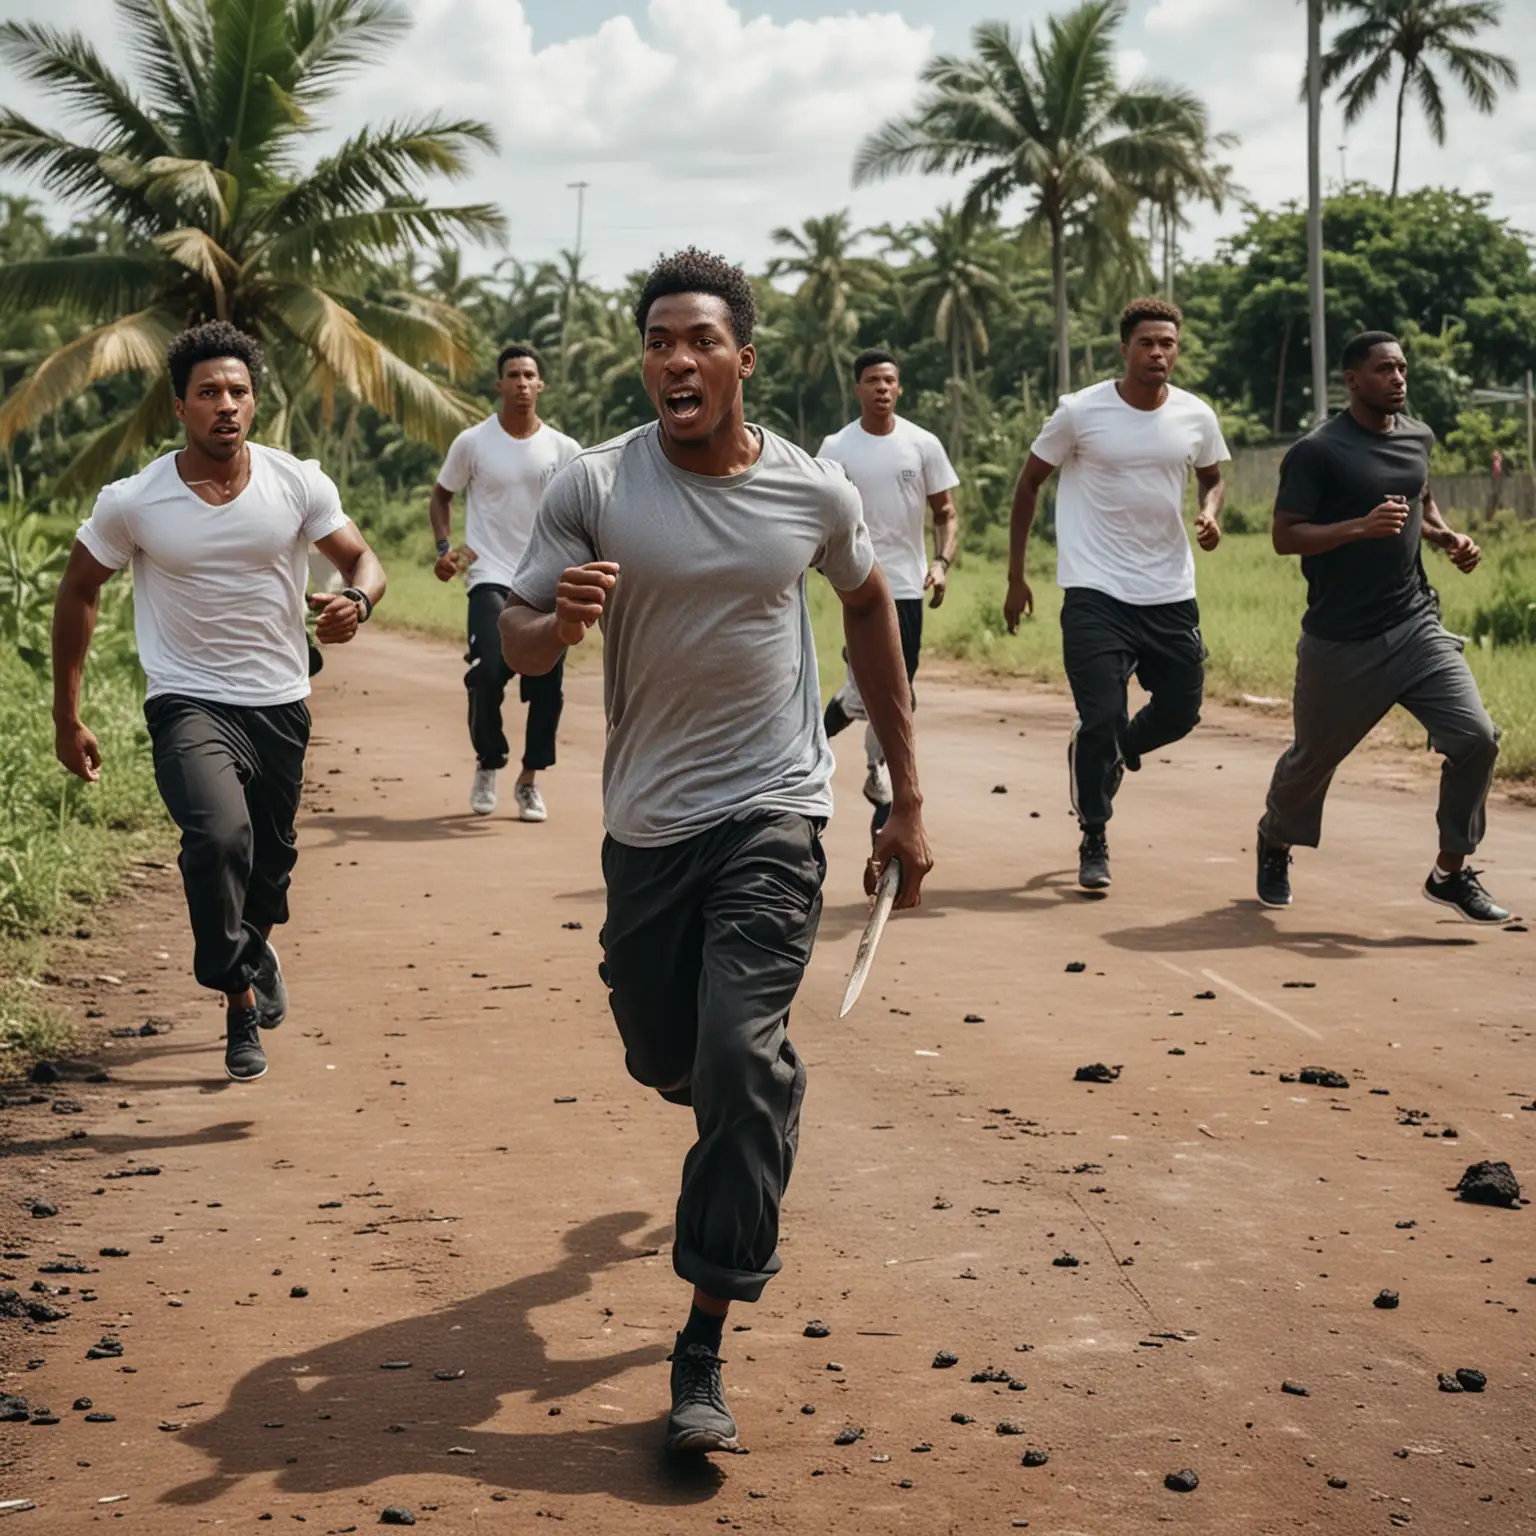 Dans un environnement de terrain de foot goudronné tropicale. 
6 hommes en jogging, t-shirt avec des machettes à la main courses une autre personne 